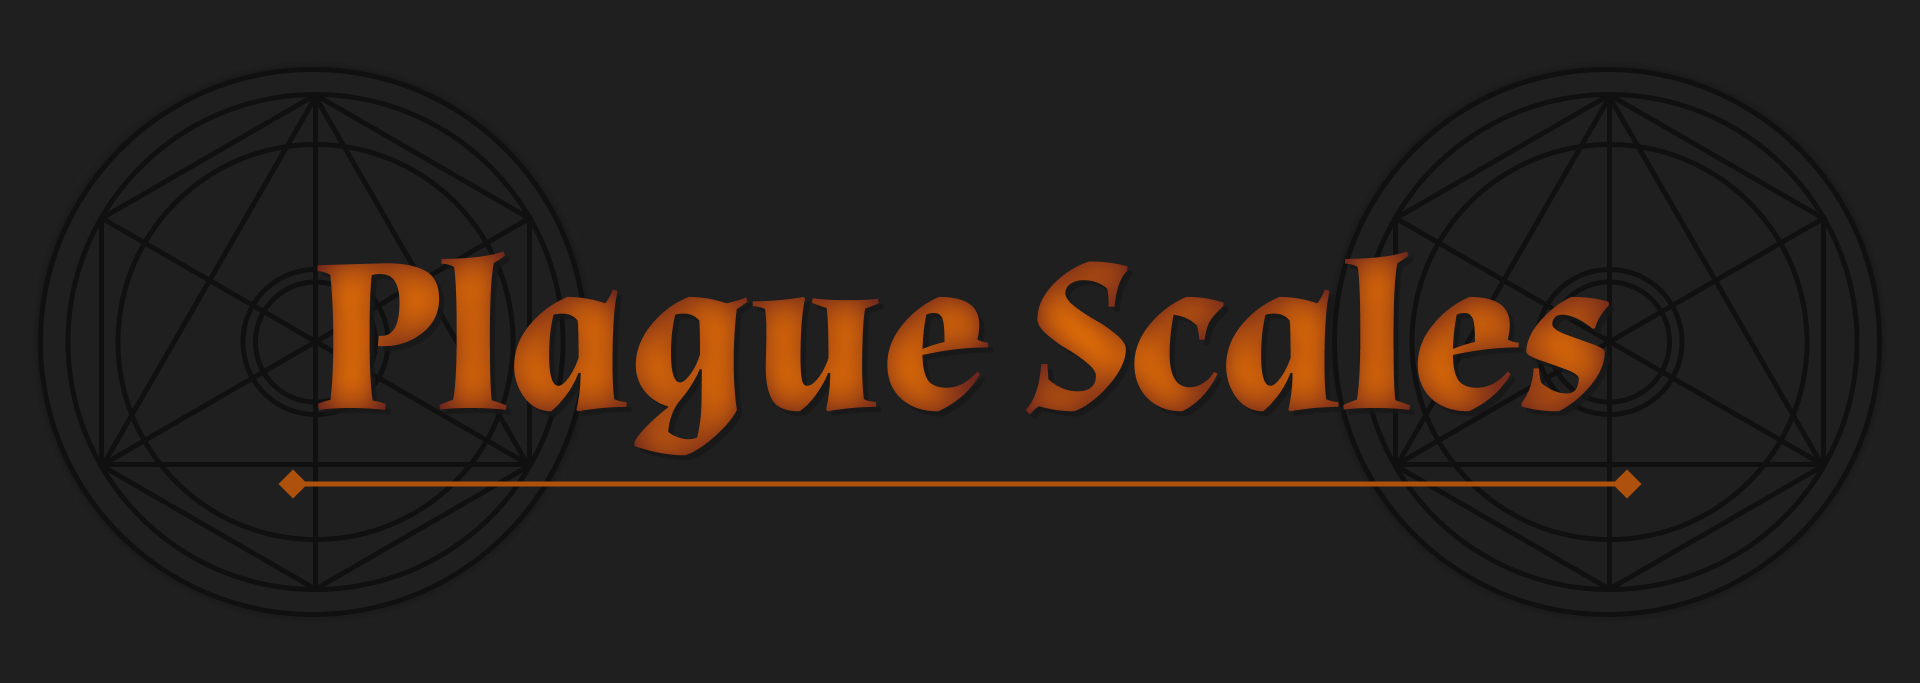 Plague Scales